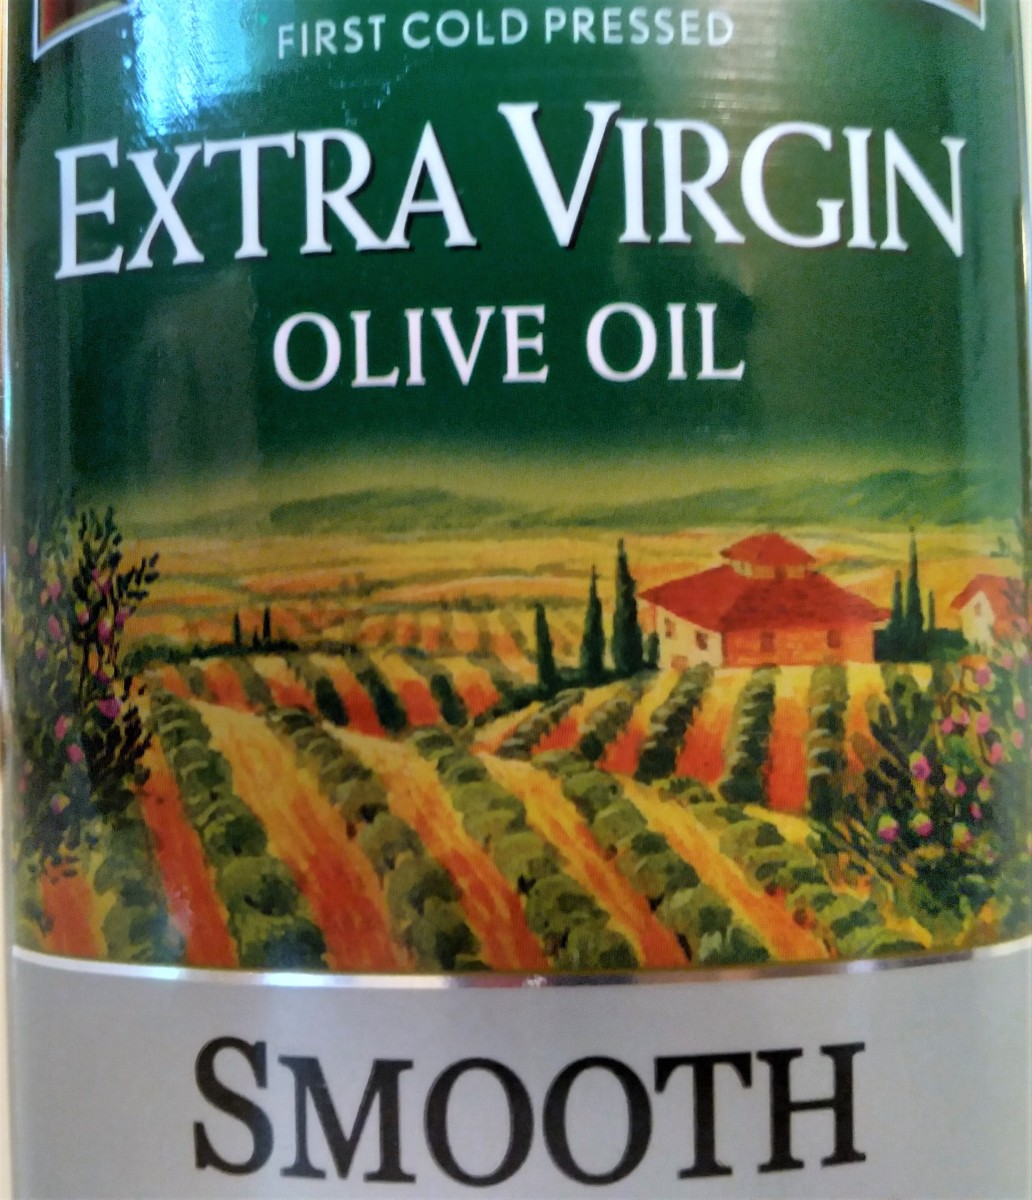 Extra Virgin Olive oil label